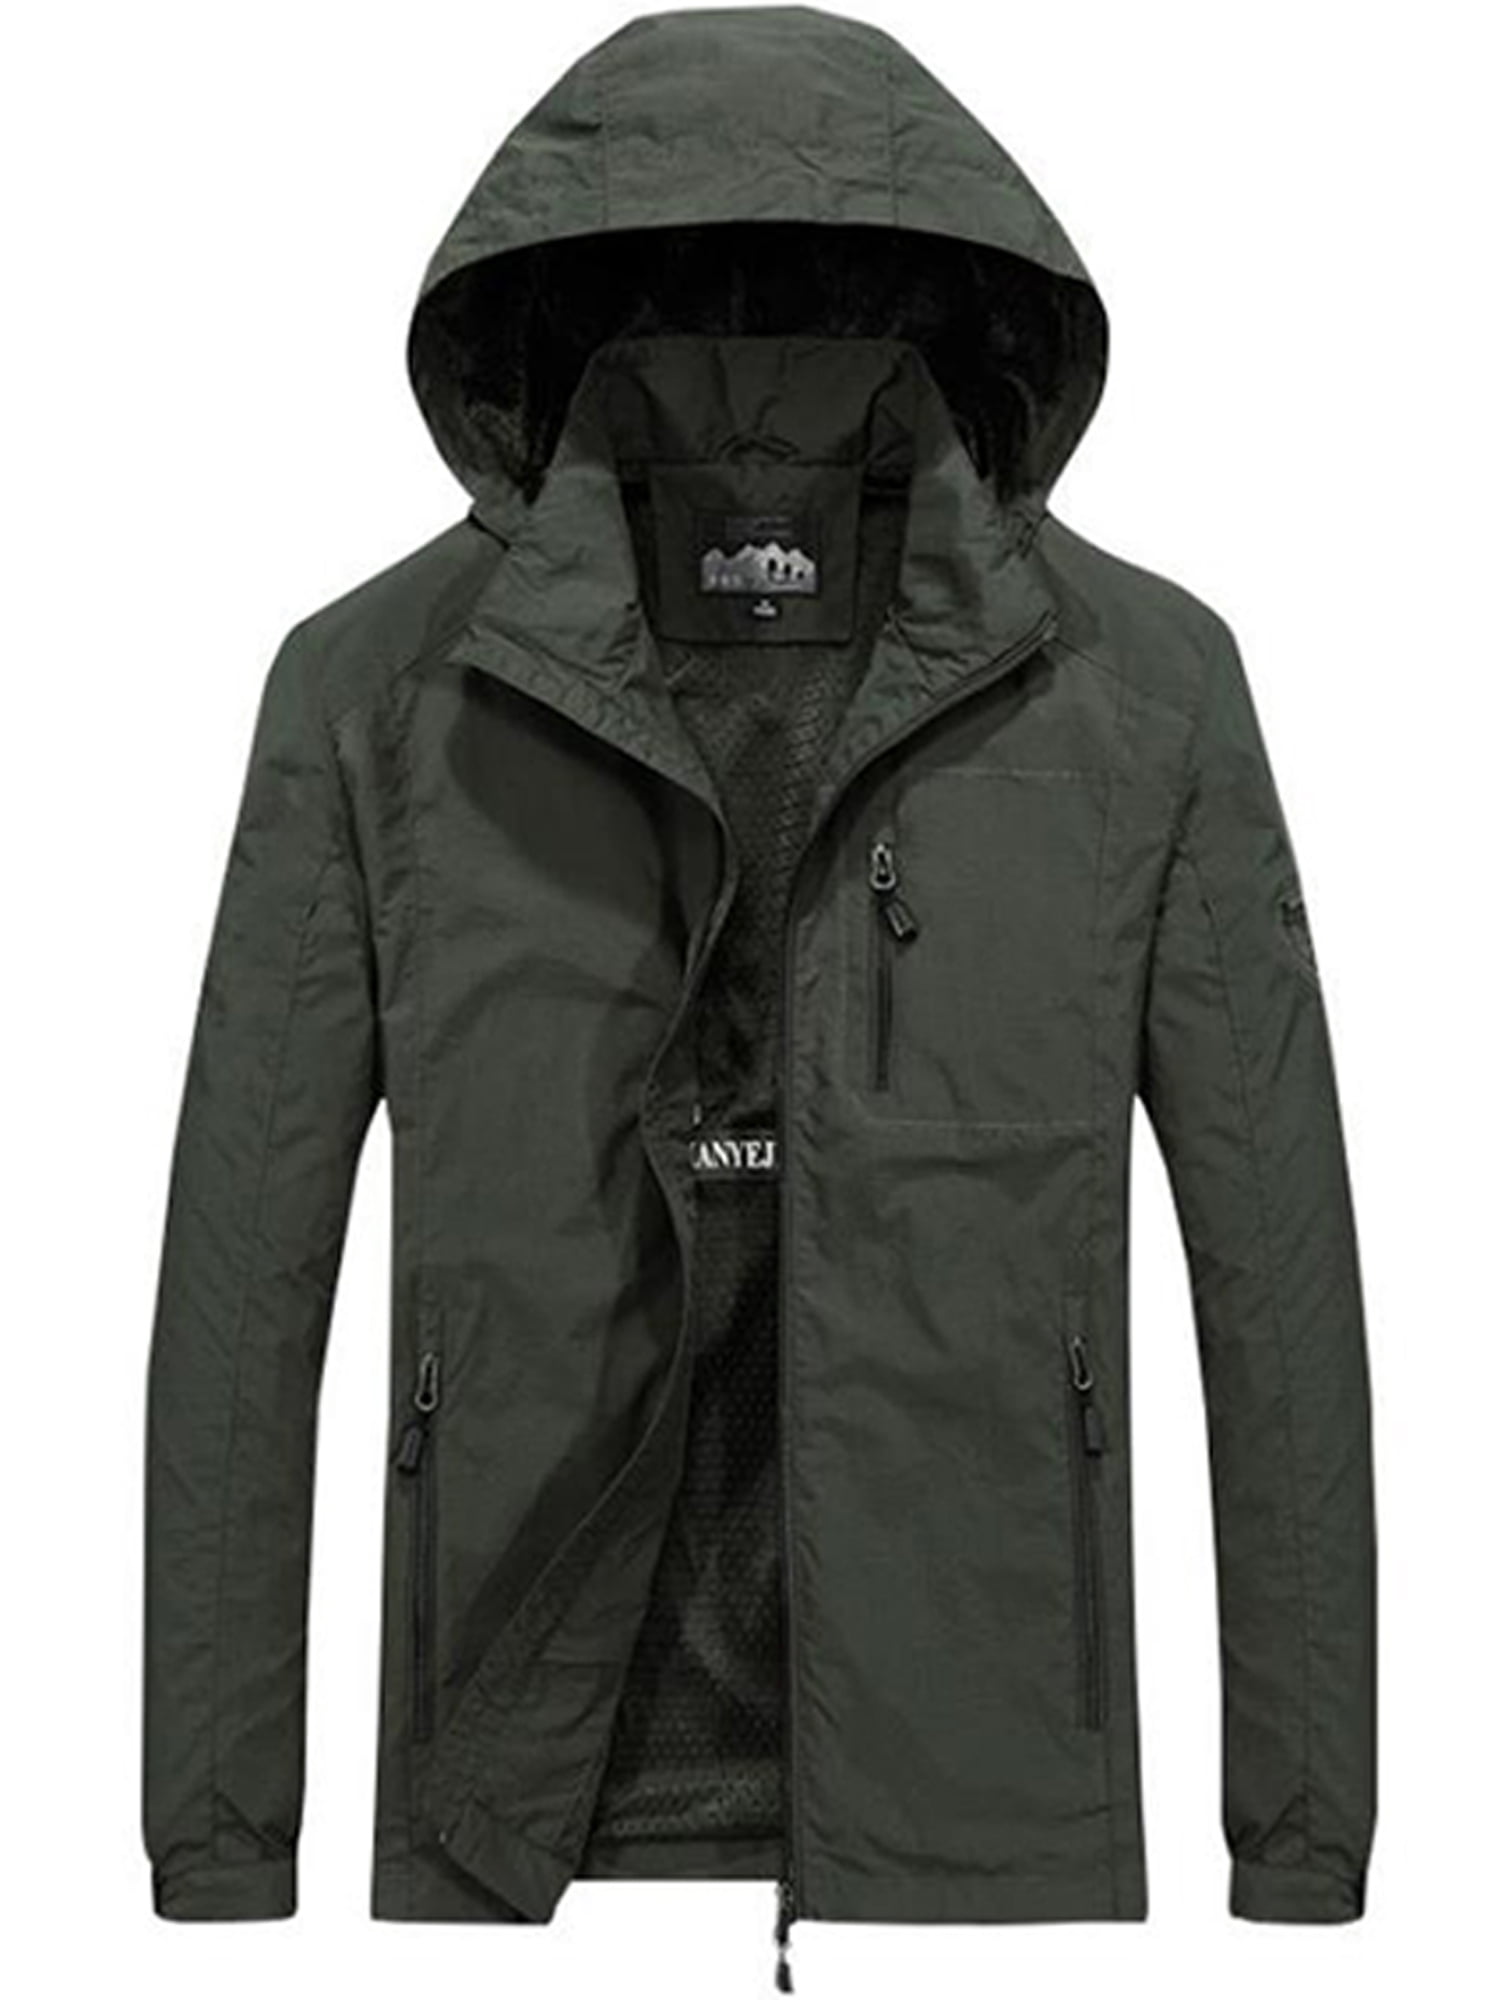 Men Windbreaker Jacket Camouflage Raincoat Waterproof Pocket Sport Hoodies Jackets Winter Warm Outwear Parka Coat 